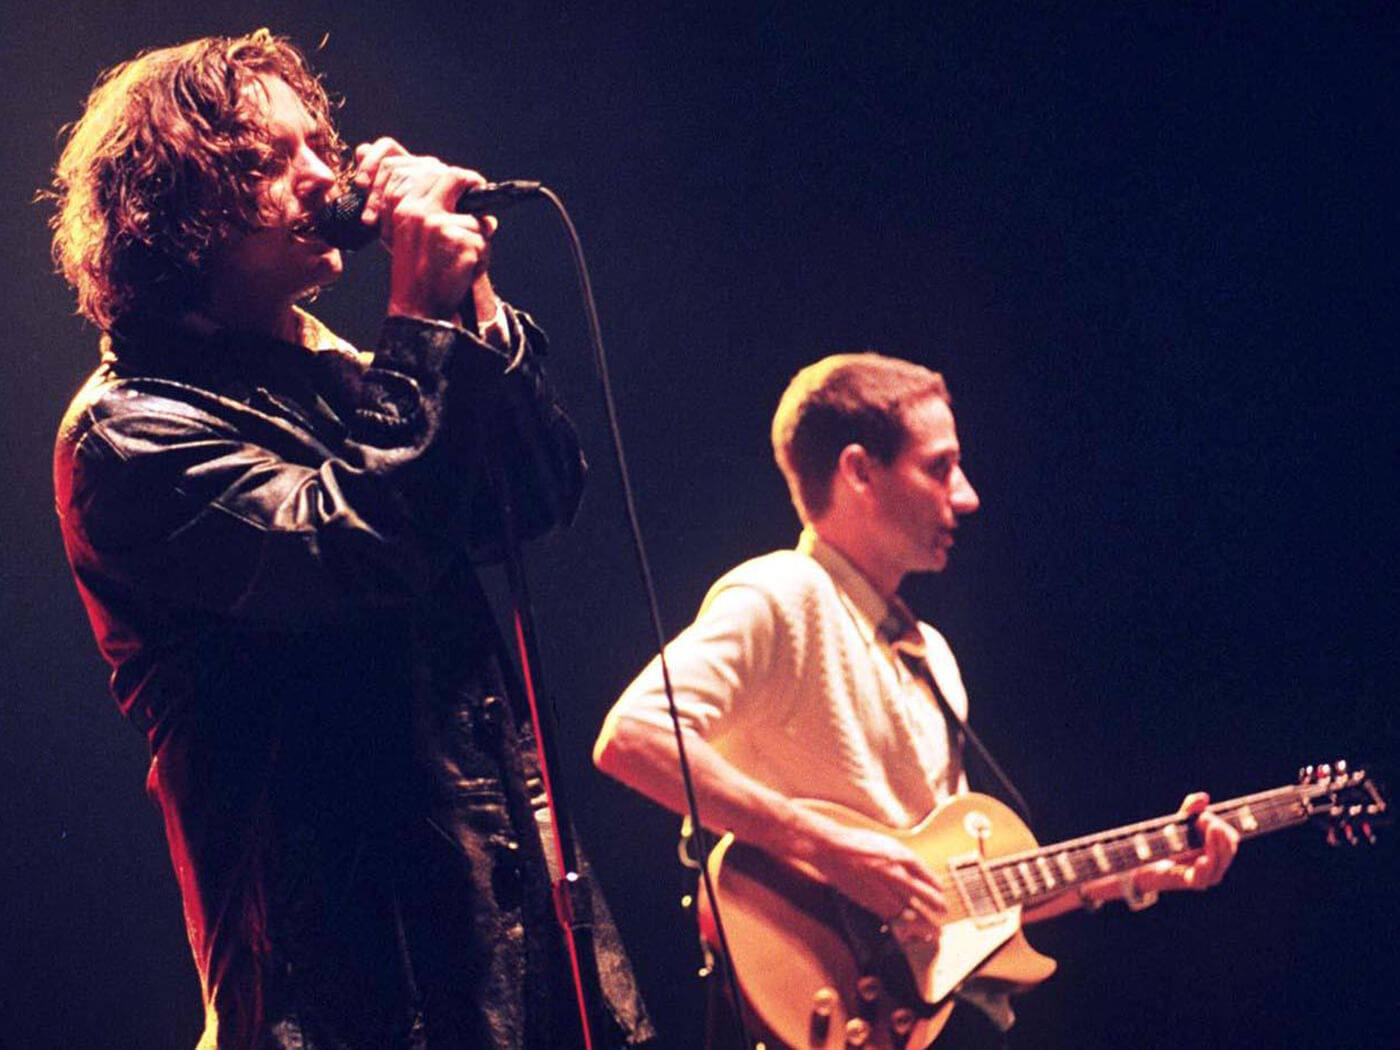 Pearl Jam Rock Band's Frontman Eddie Vedder Engrossed In Performance Background